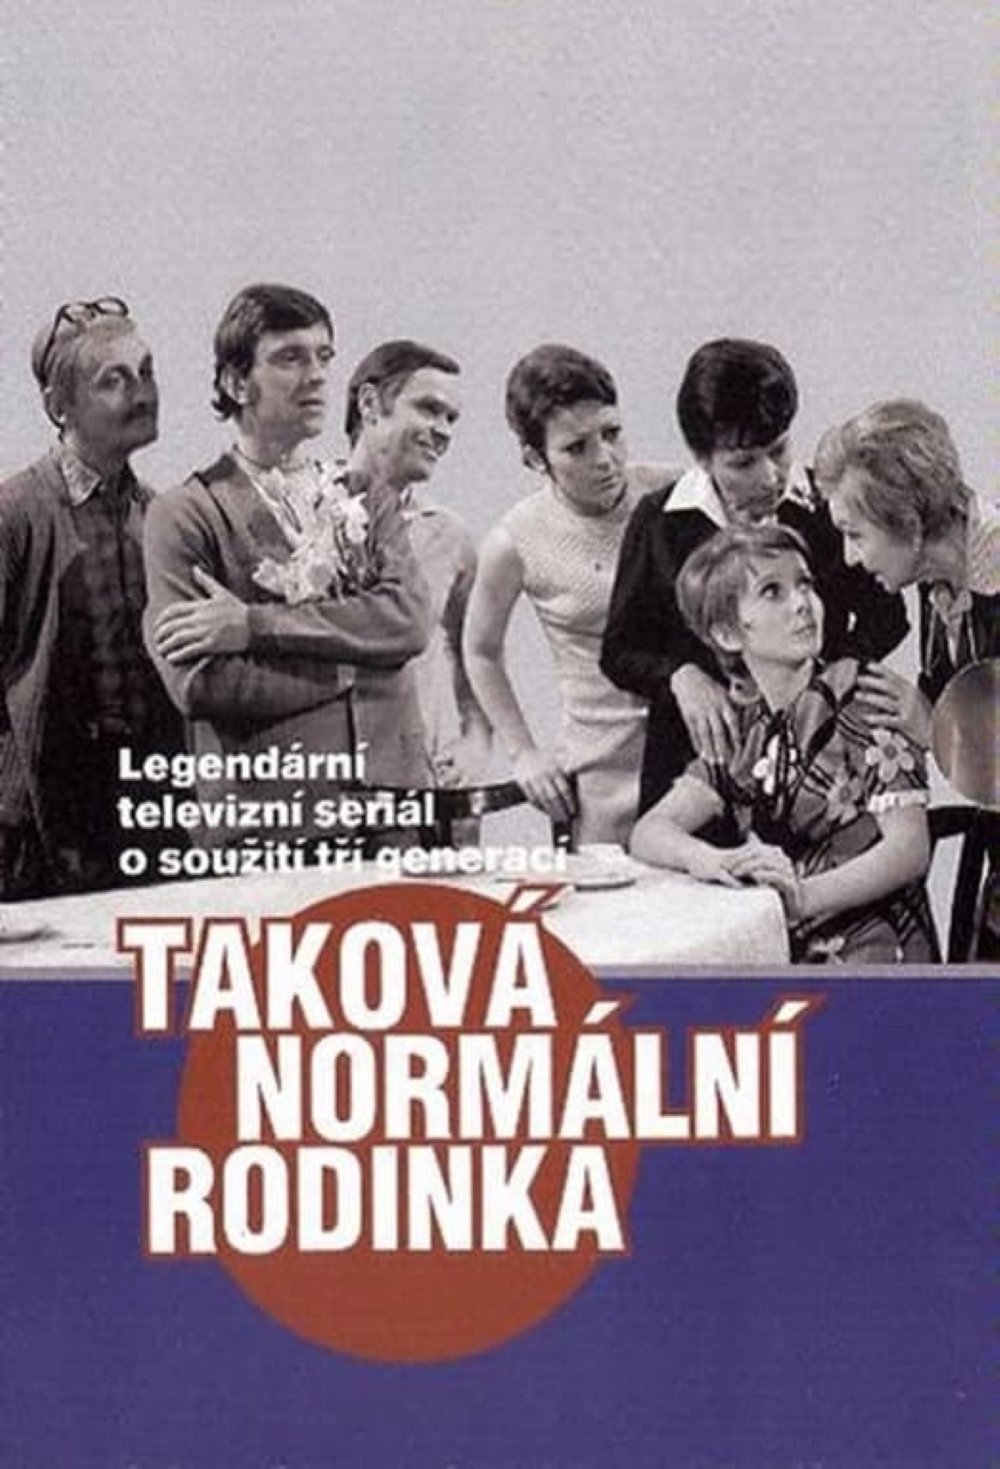 Plakát pro film “Taková normální rodinka”